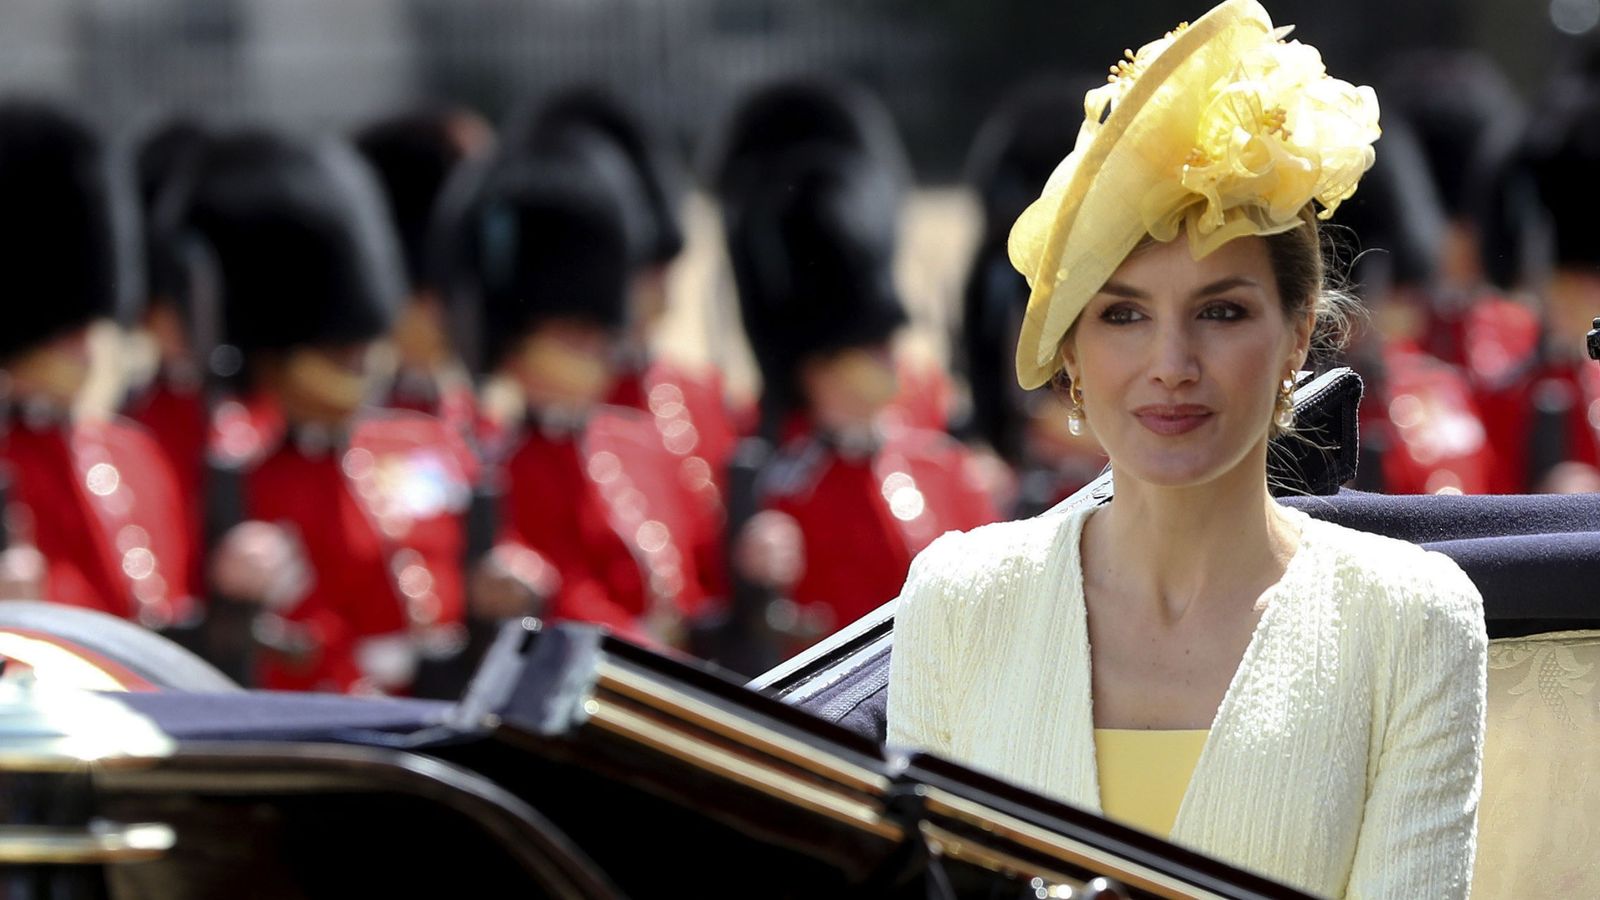 Foto: La Reina en la carroza rumbo a Buckingham. (Efe)